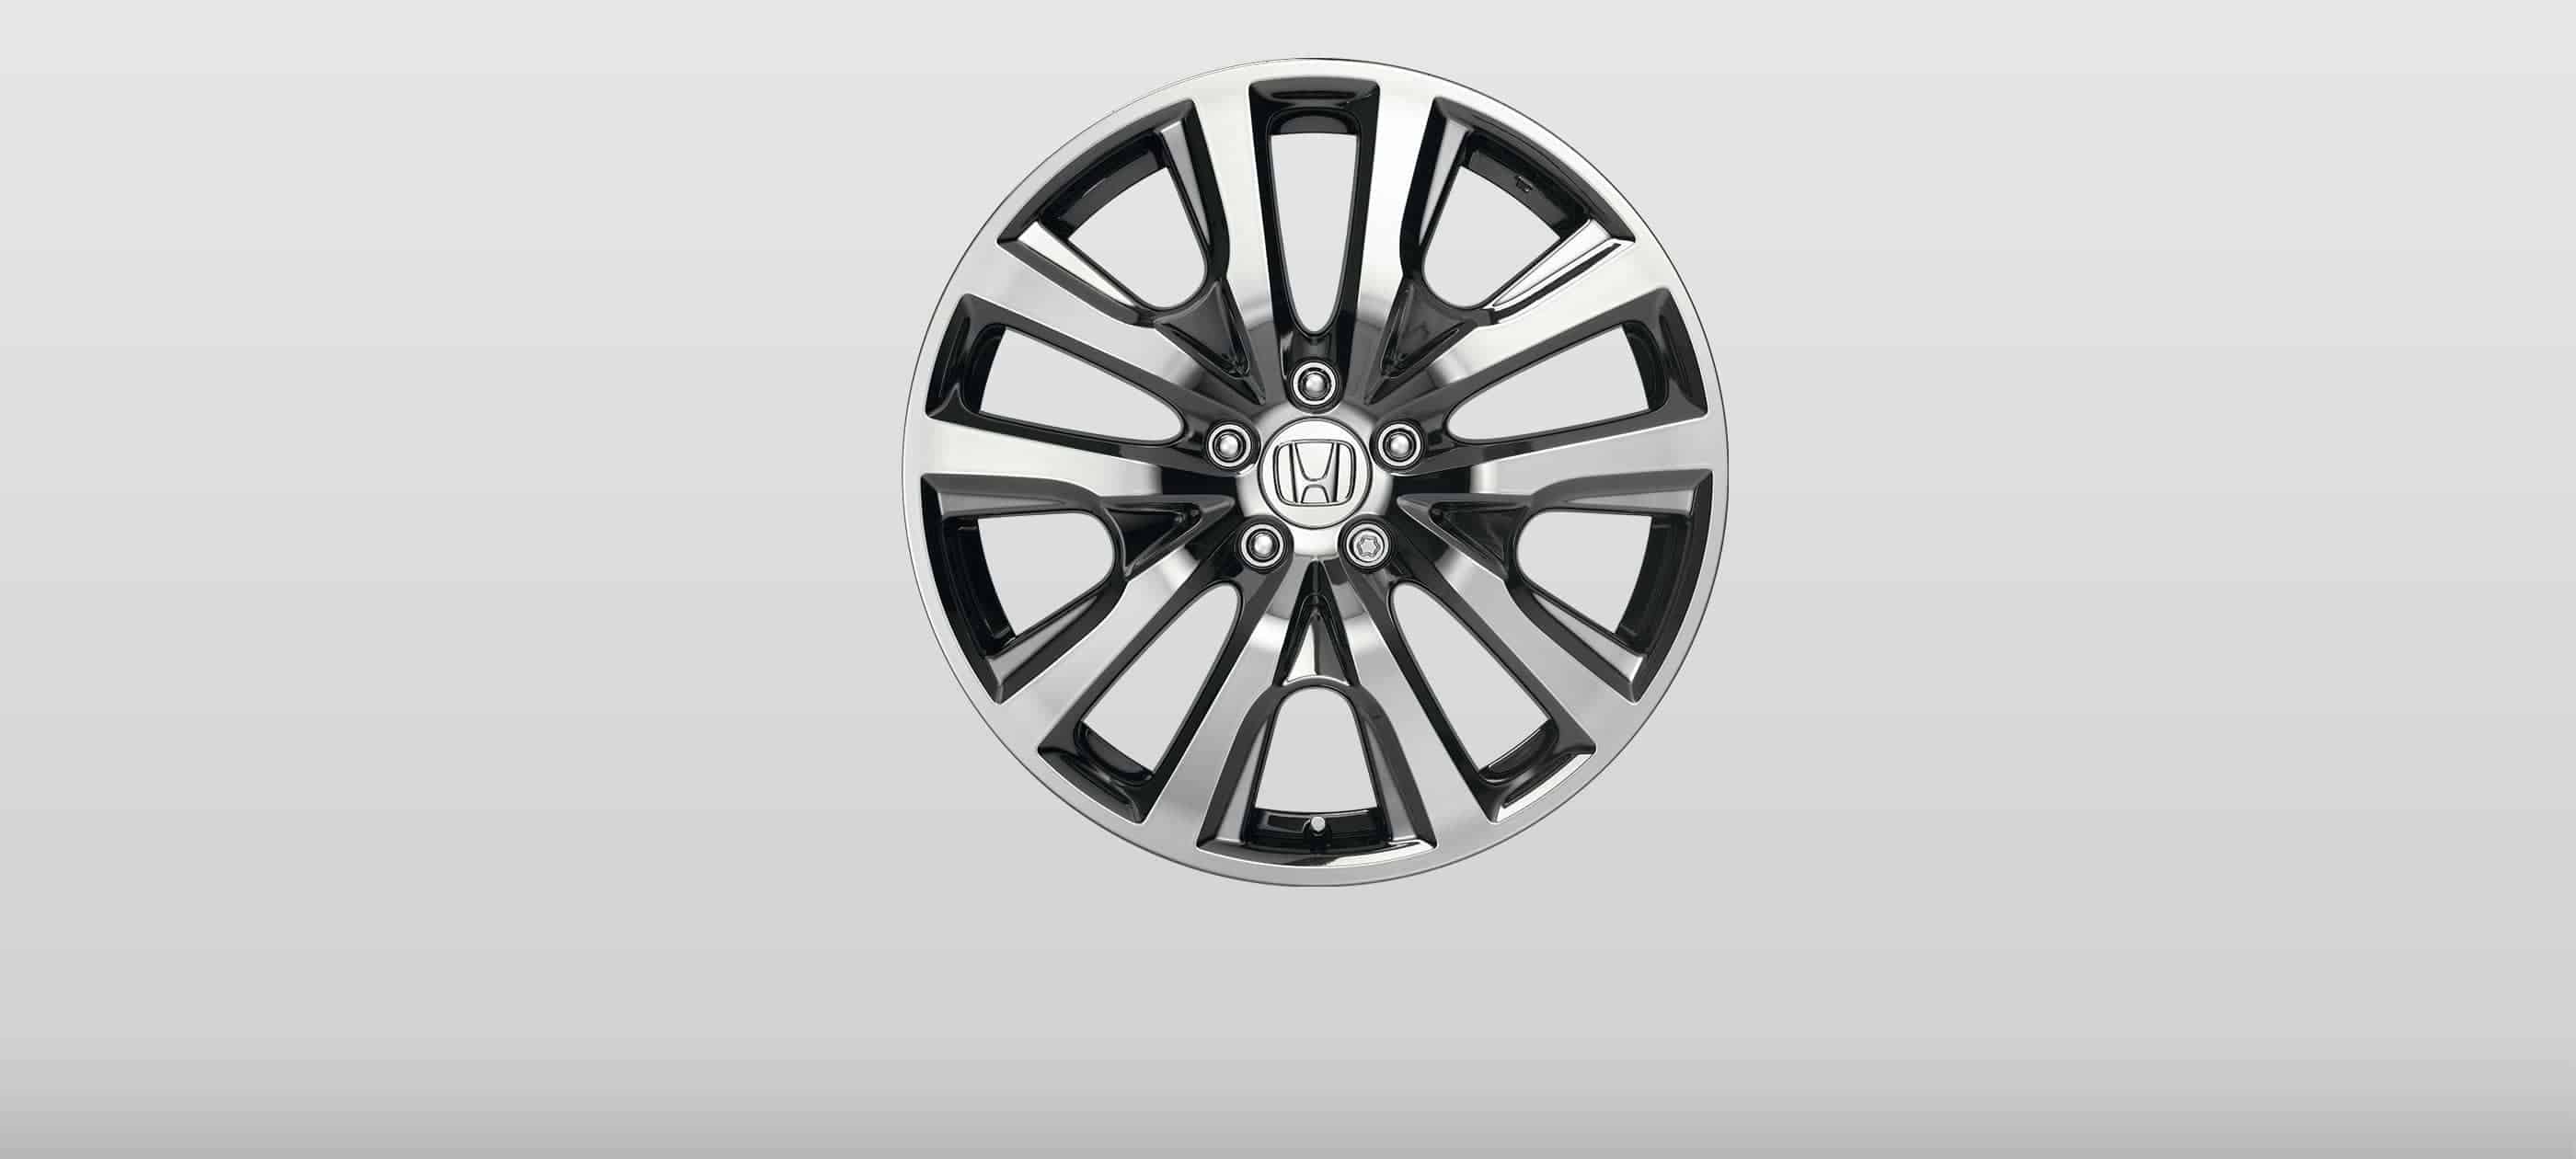 Honda Accord 19-Inch Alloy Wheels Fort Worth